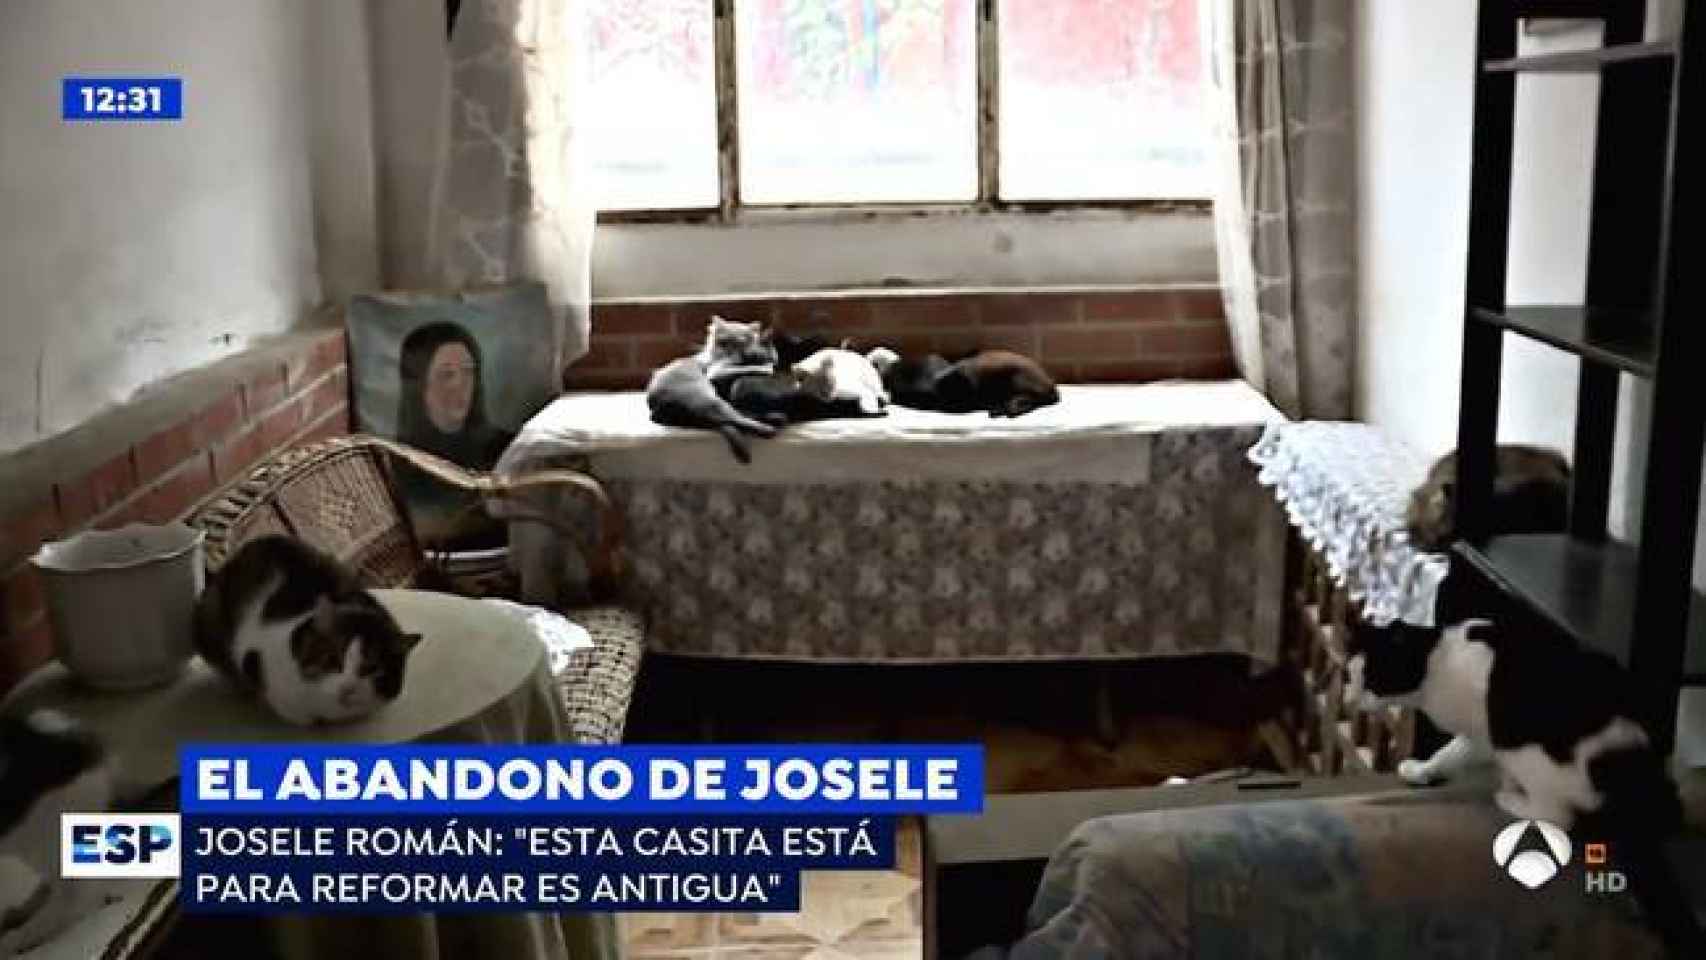 Imagen de la casa de Josele y los gatos que le hacen compañía.